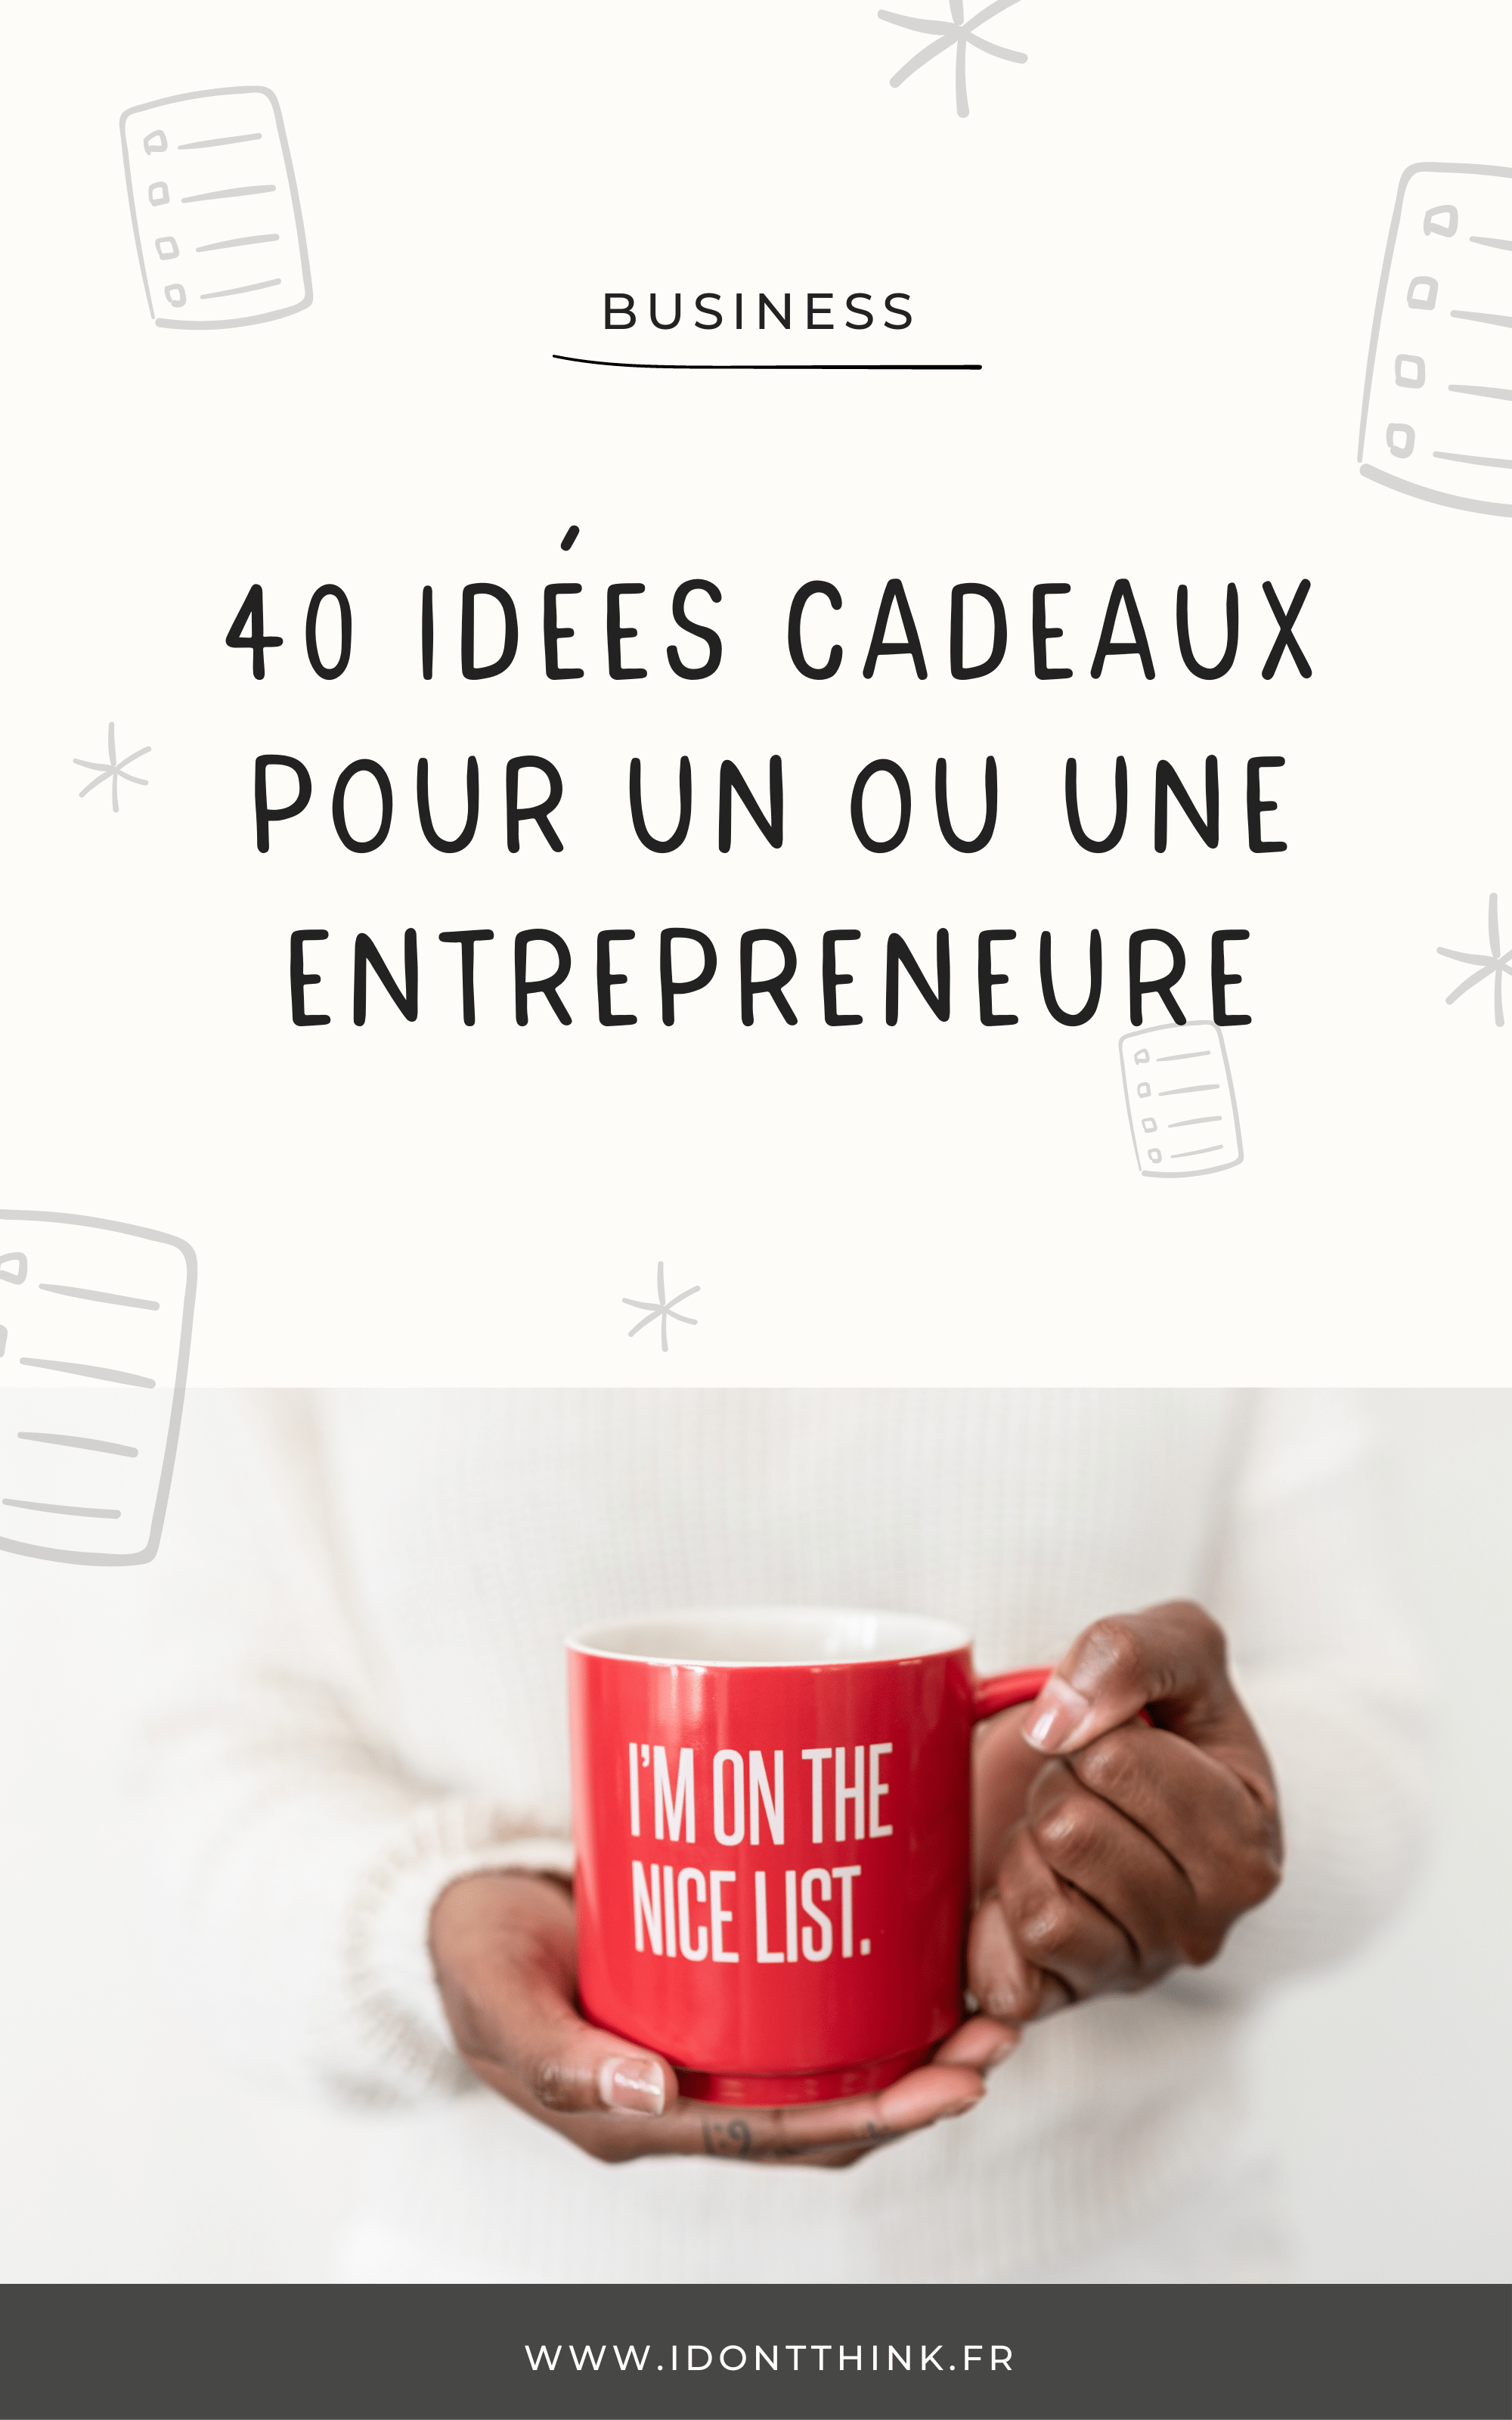 40 idées cadeaux pour un entrepreneur